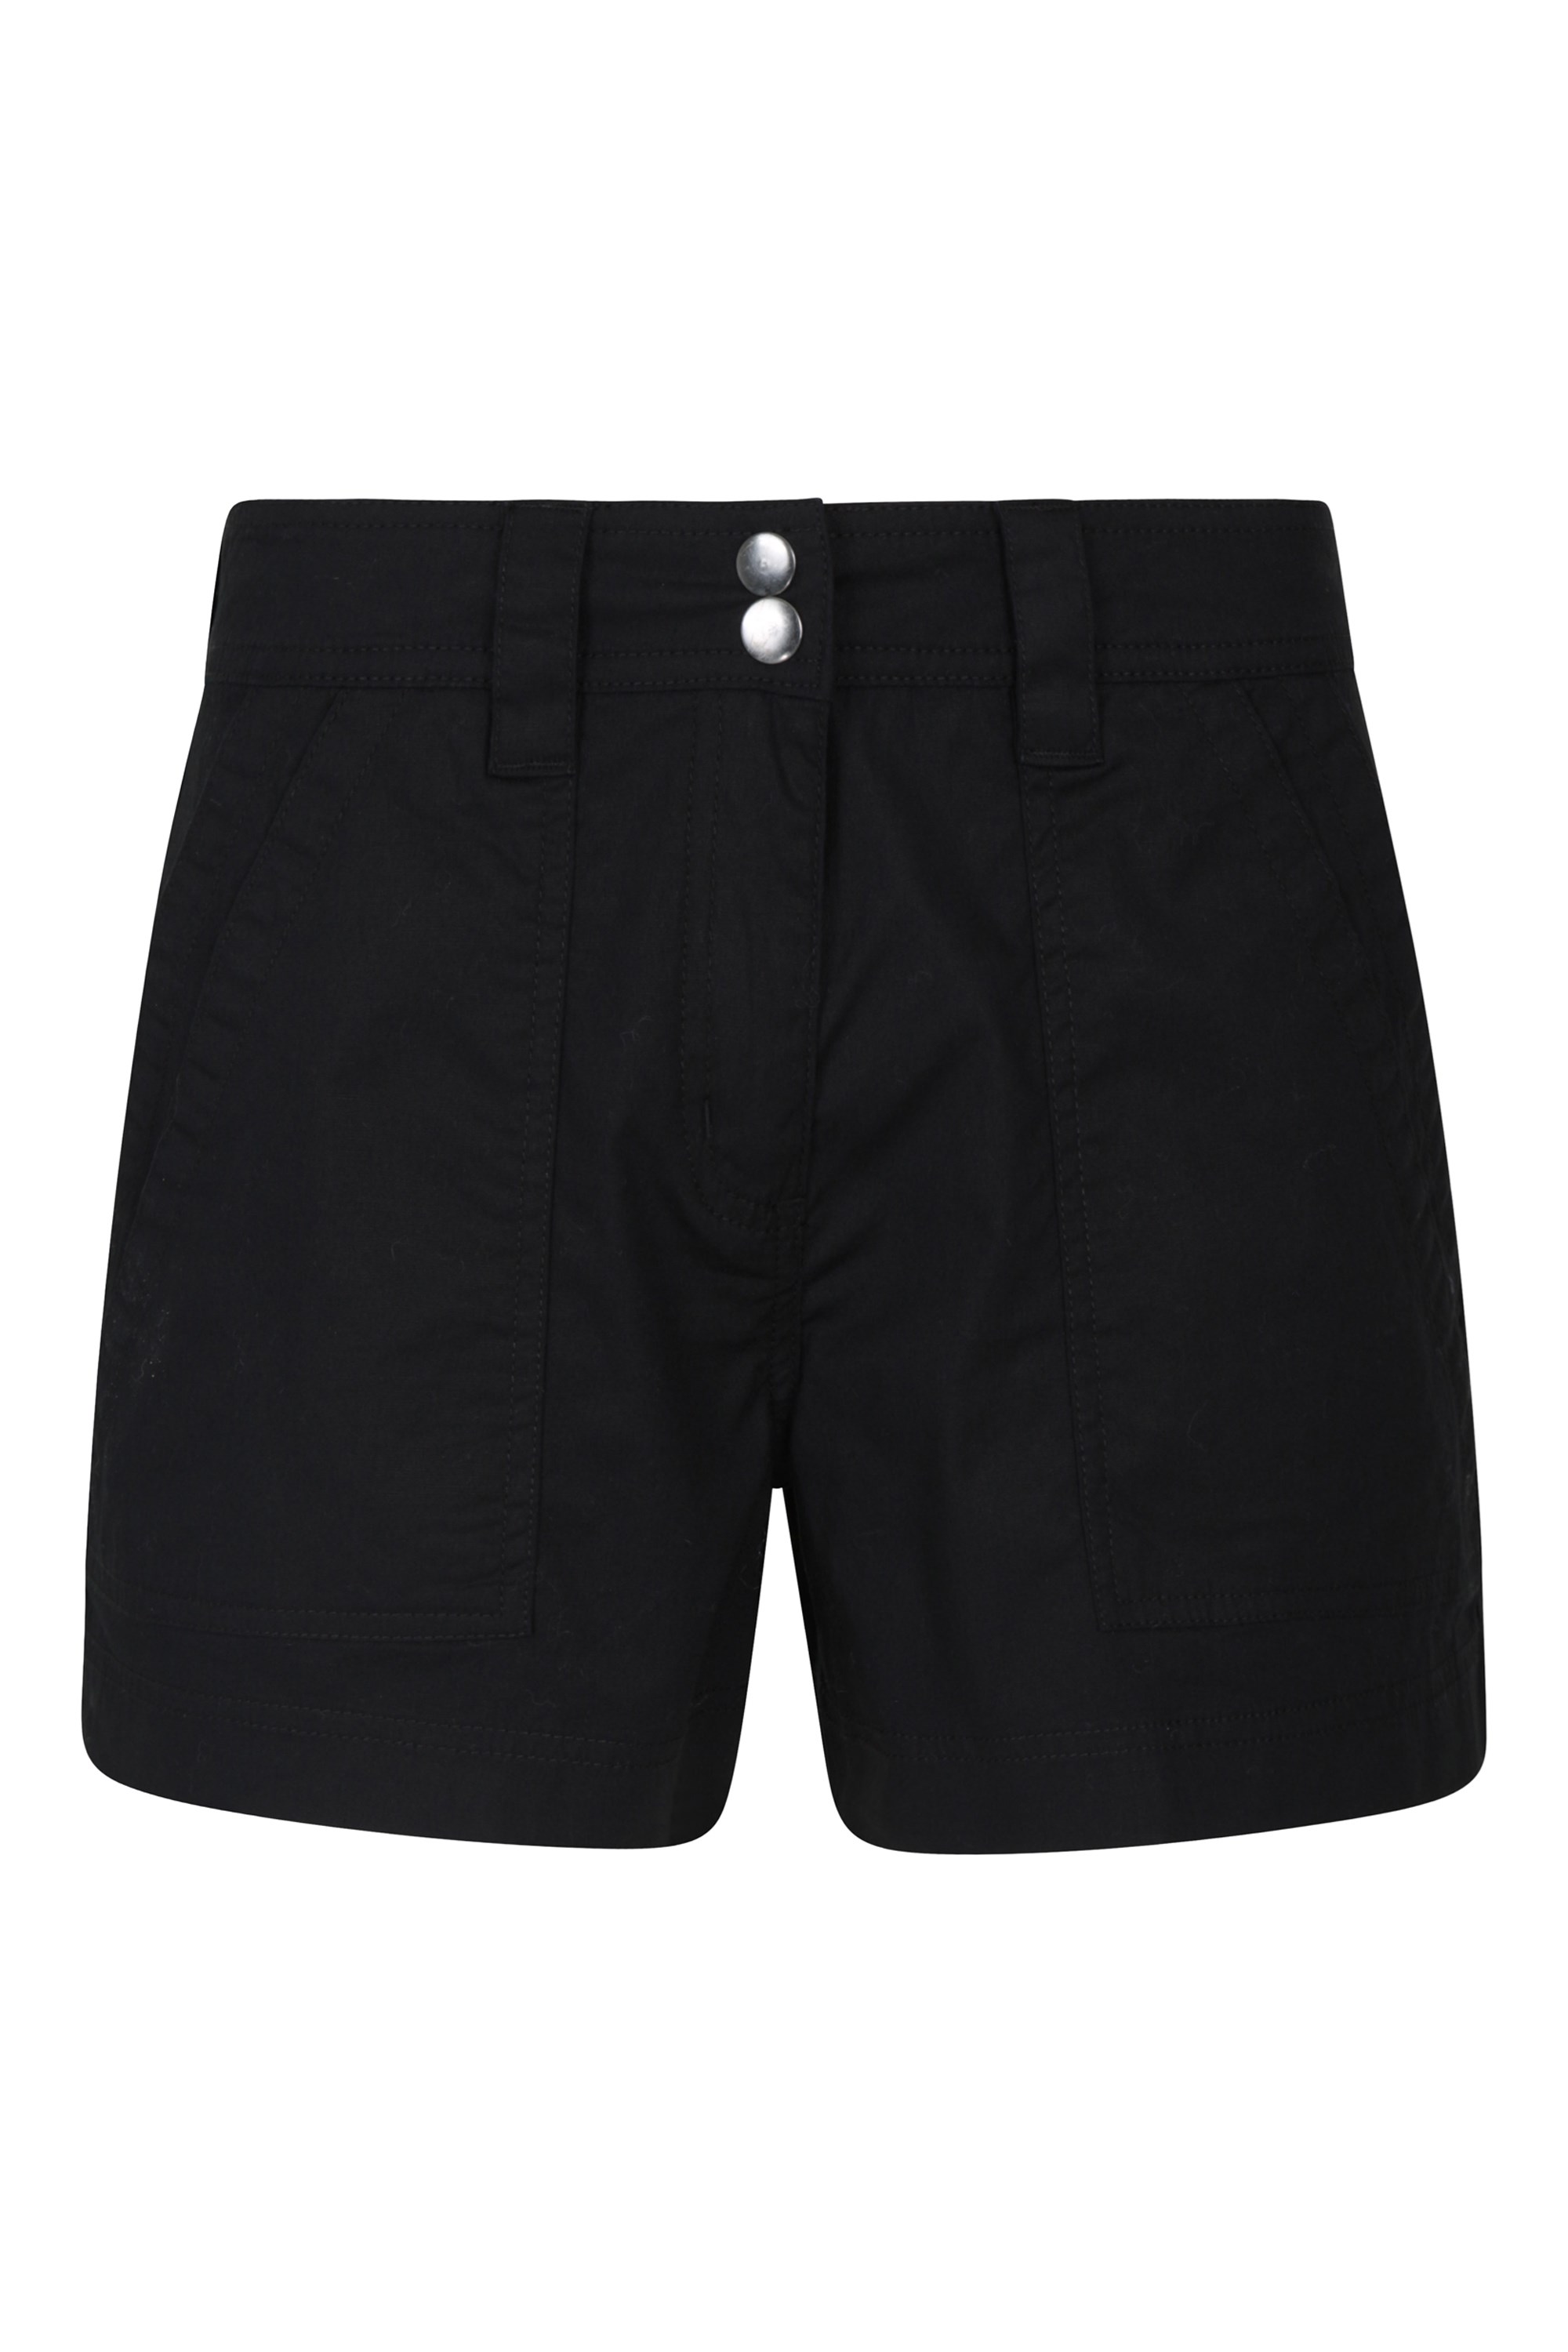 Coast Womens Shorty Shorts - Black